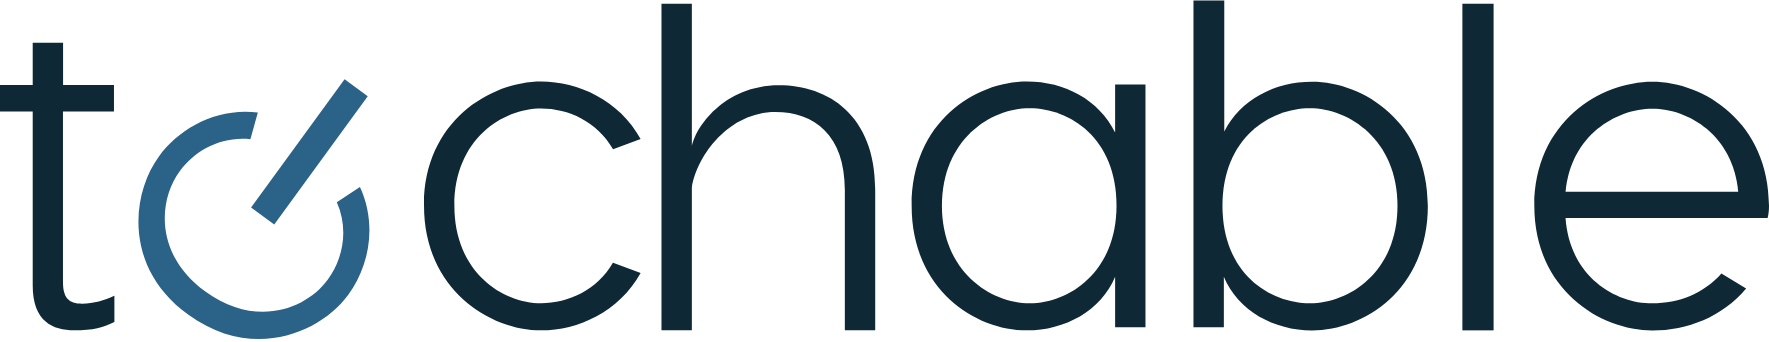 techable-logo